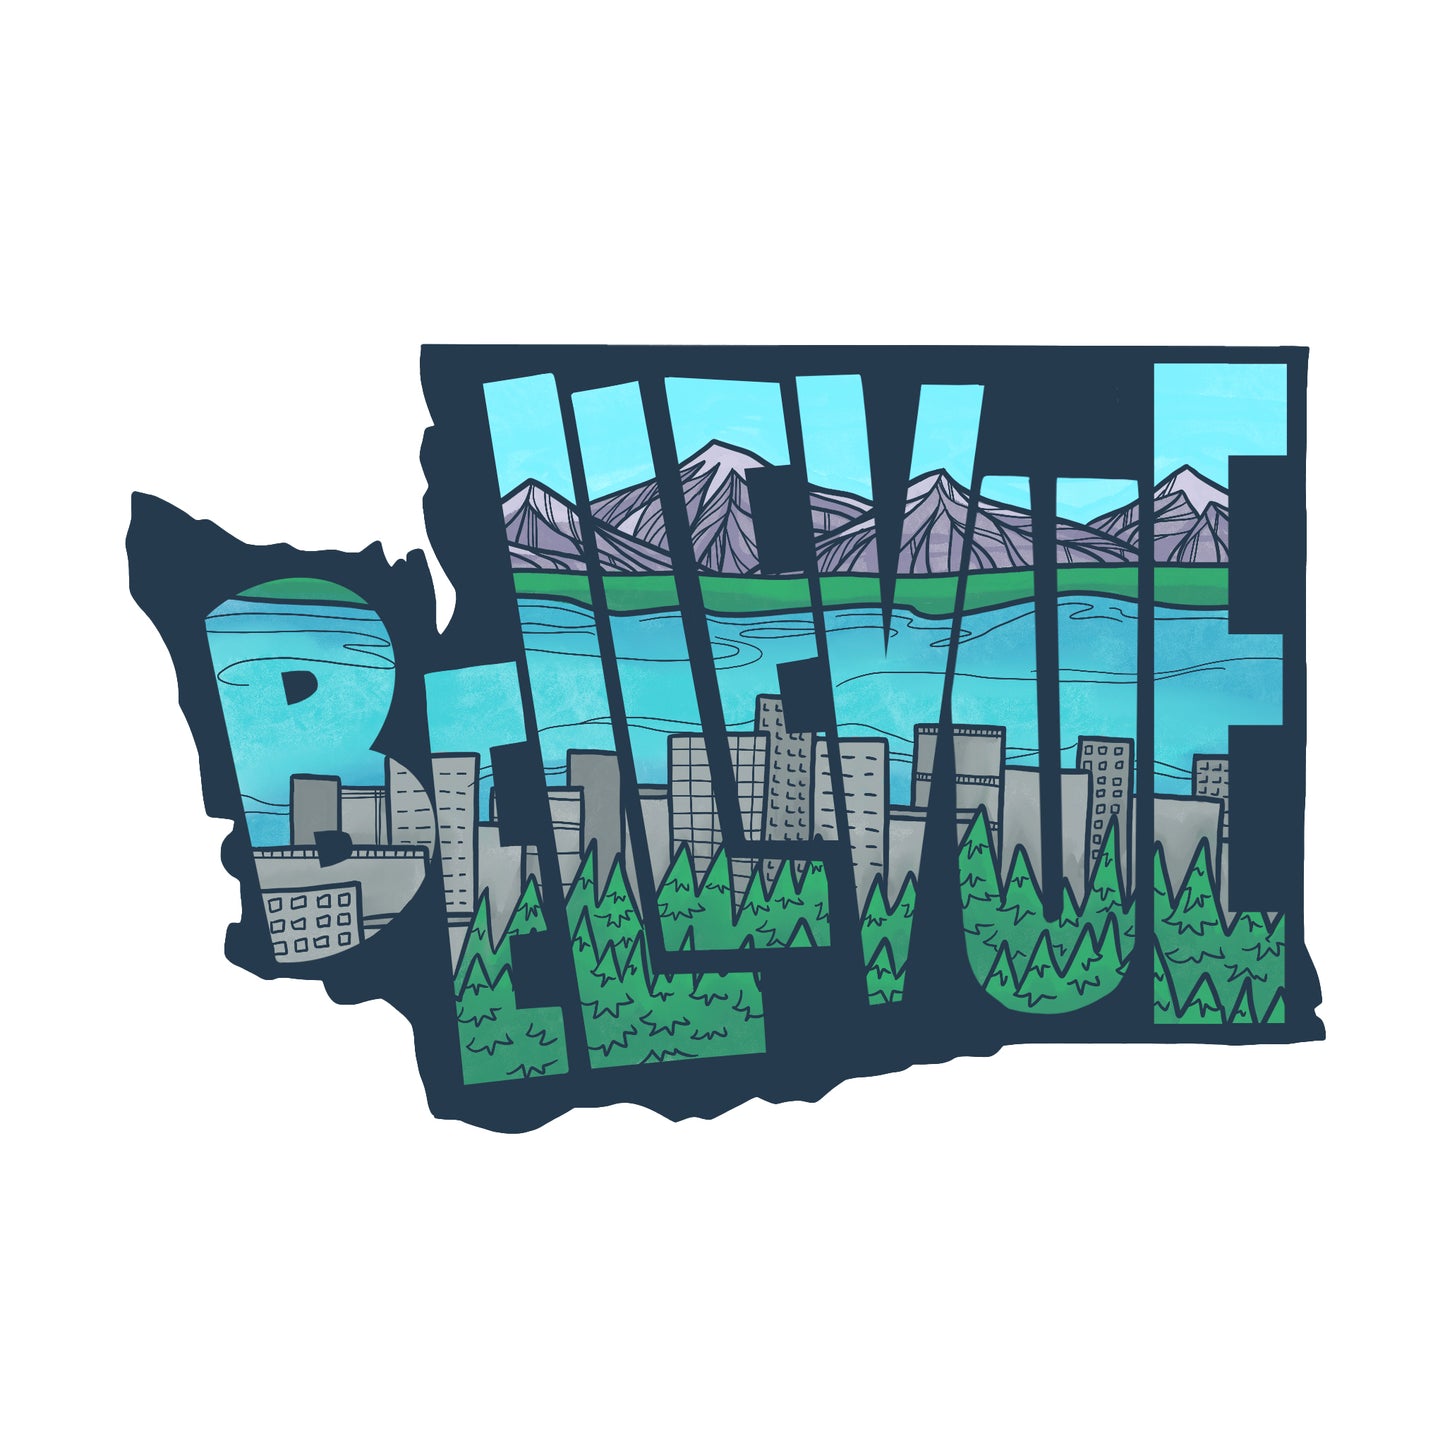 Bellevue Washington sticker